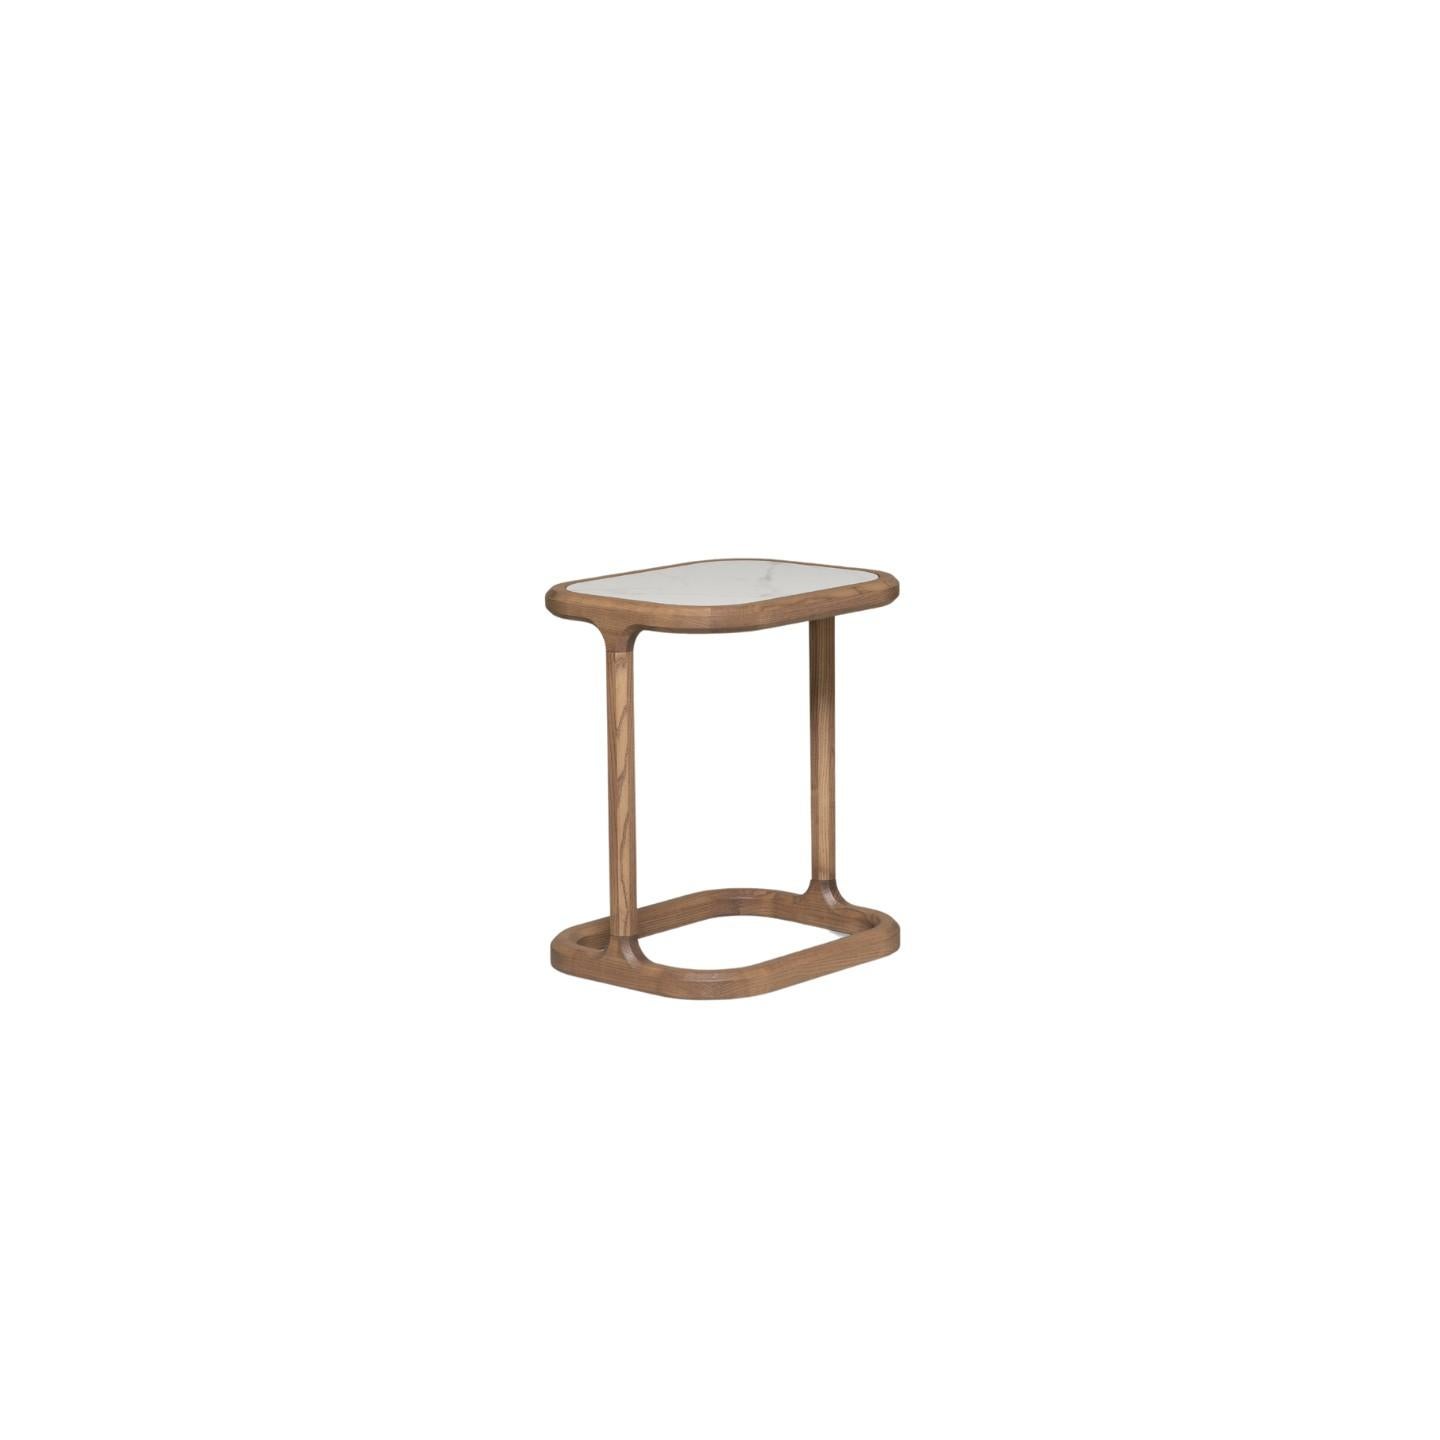 Table basse contemporaine en frêne, conçue par Libero Rutilo
La table peut avoir un plateau en bois, en verre ou en pierre : pierres disponibles
Emperador sombre
Sahara Noir
Pulpis brun
Calacatta blanc.


 